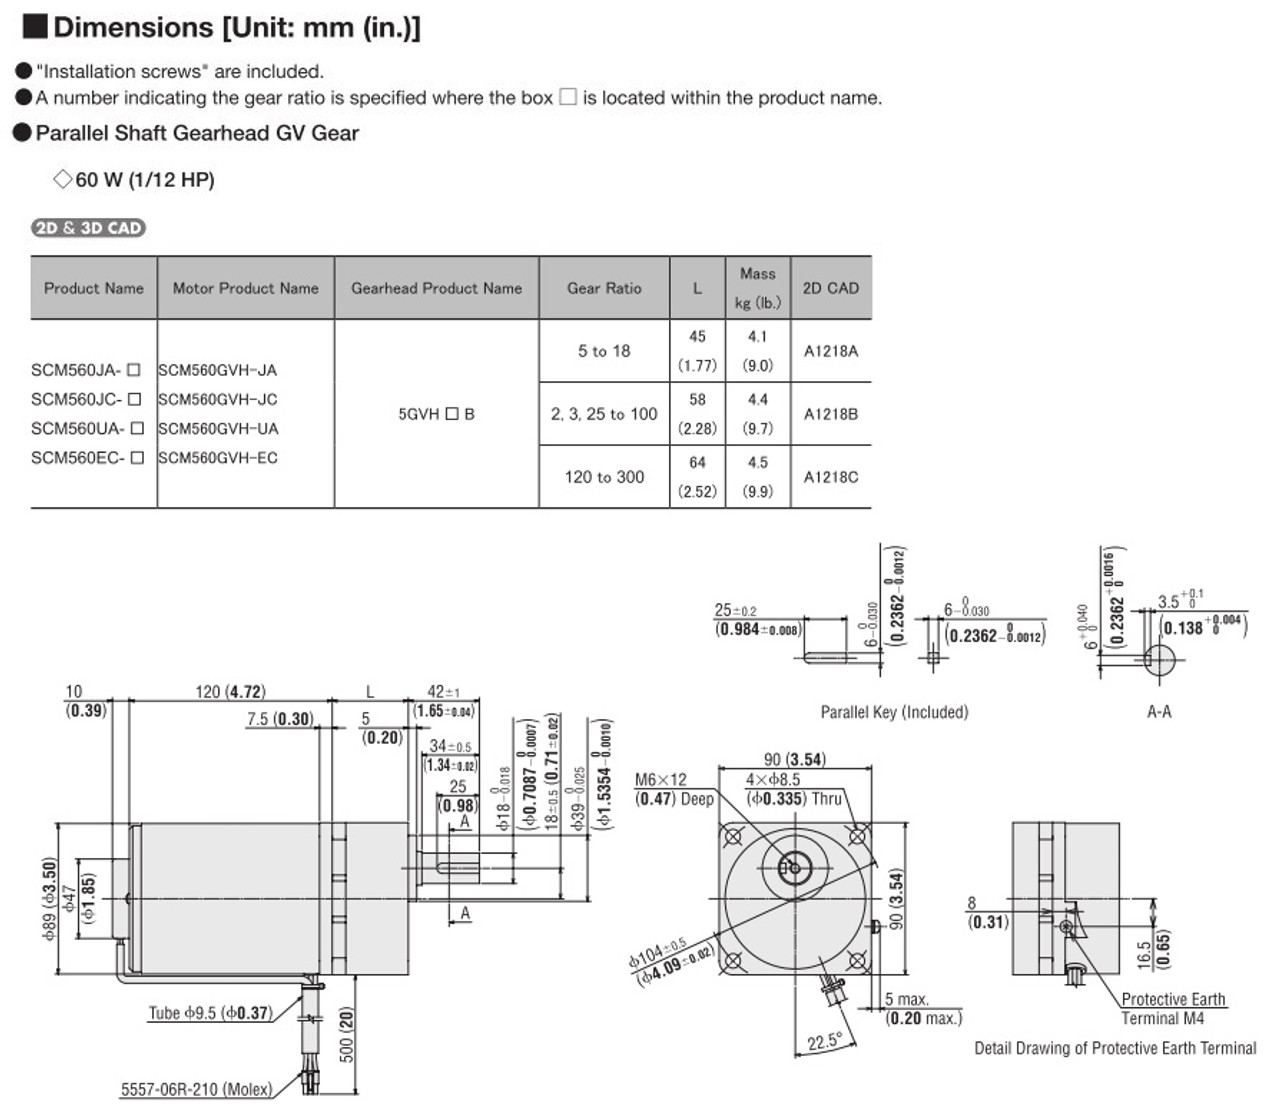 SCM560EC-75 - Dimensions